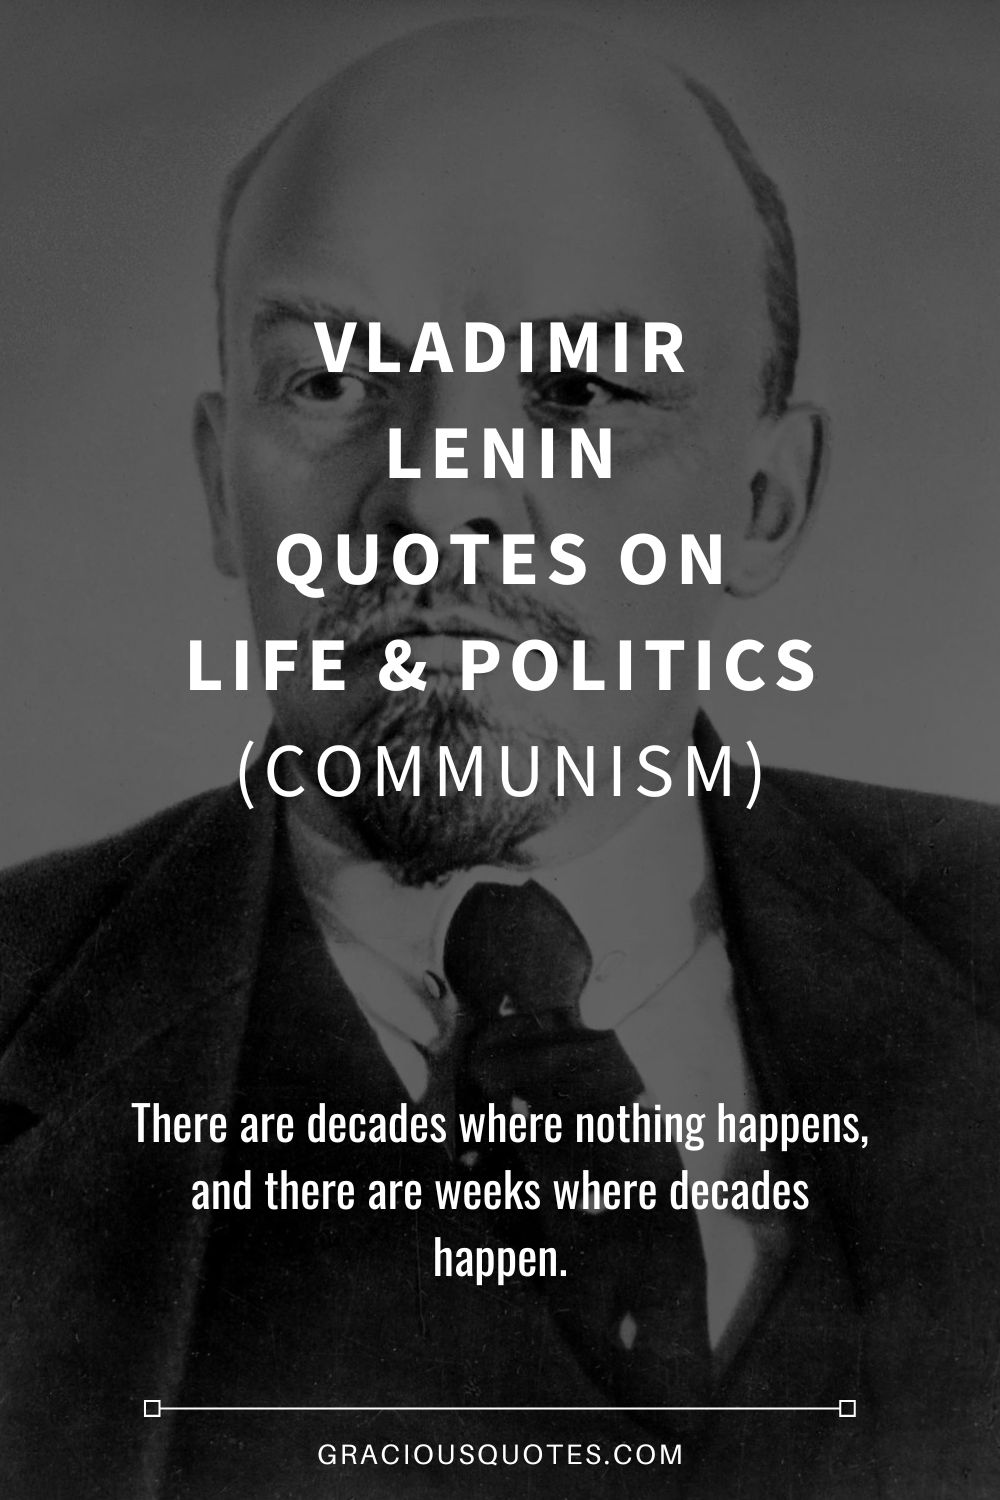 Vladimir Lenin Quotes on Life & Politics (COMMUNISM) - Gracious Quotes